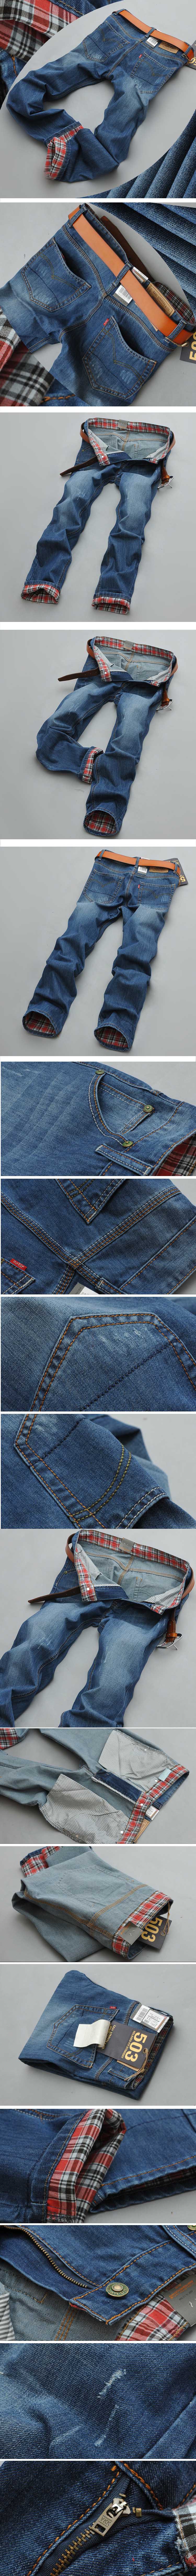 cari celana jeans pria motif kotak? silahkan klik dan pesan online disini , koleksi terlengkap jeans pria dengan model terbaru yang keren